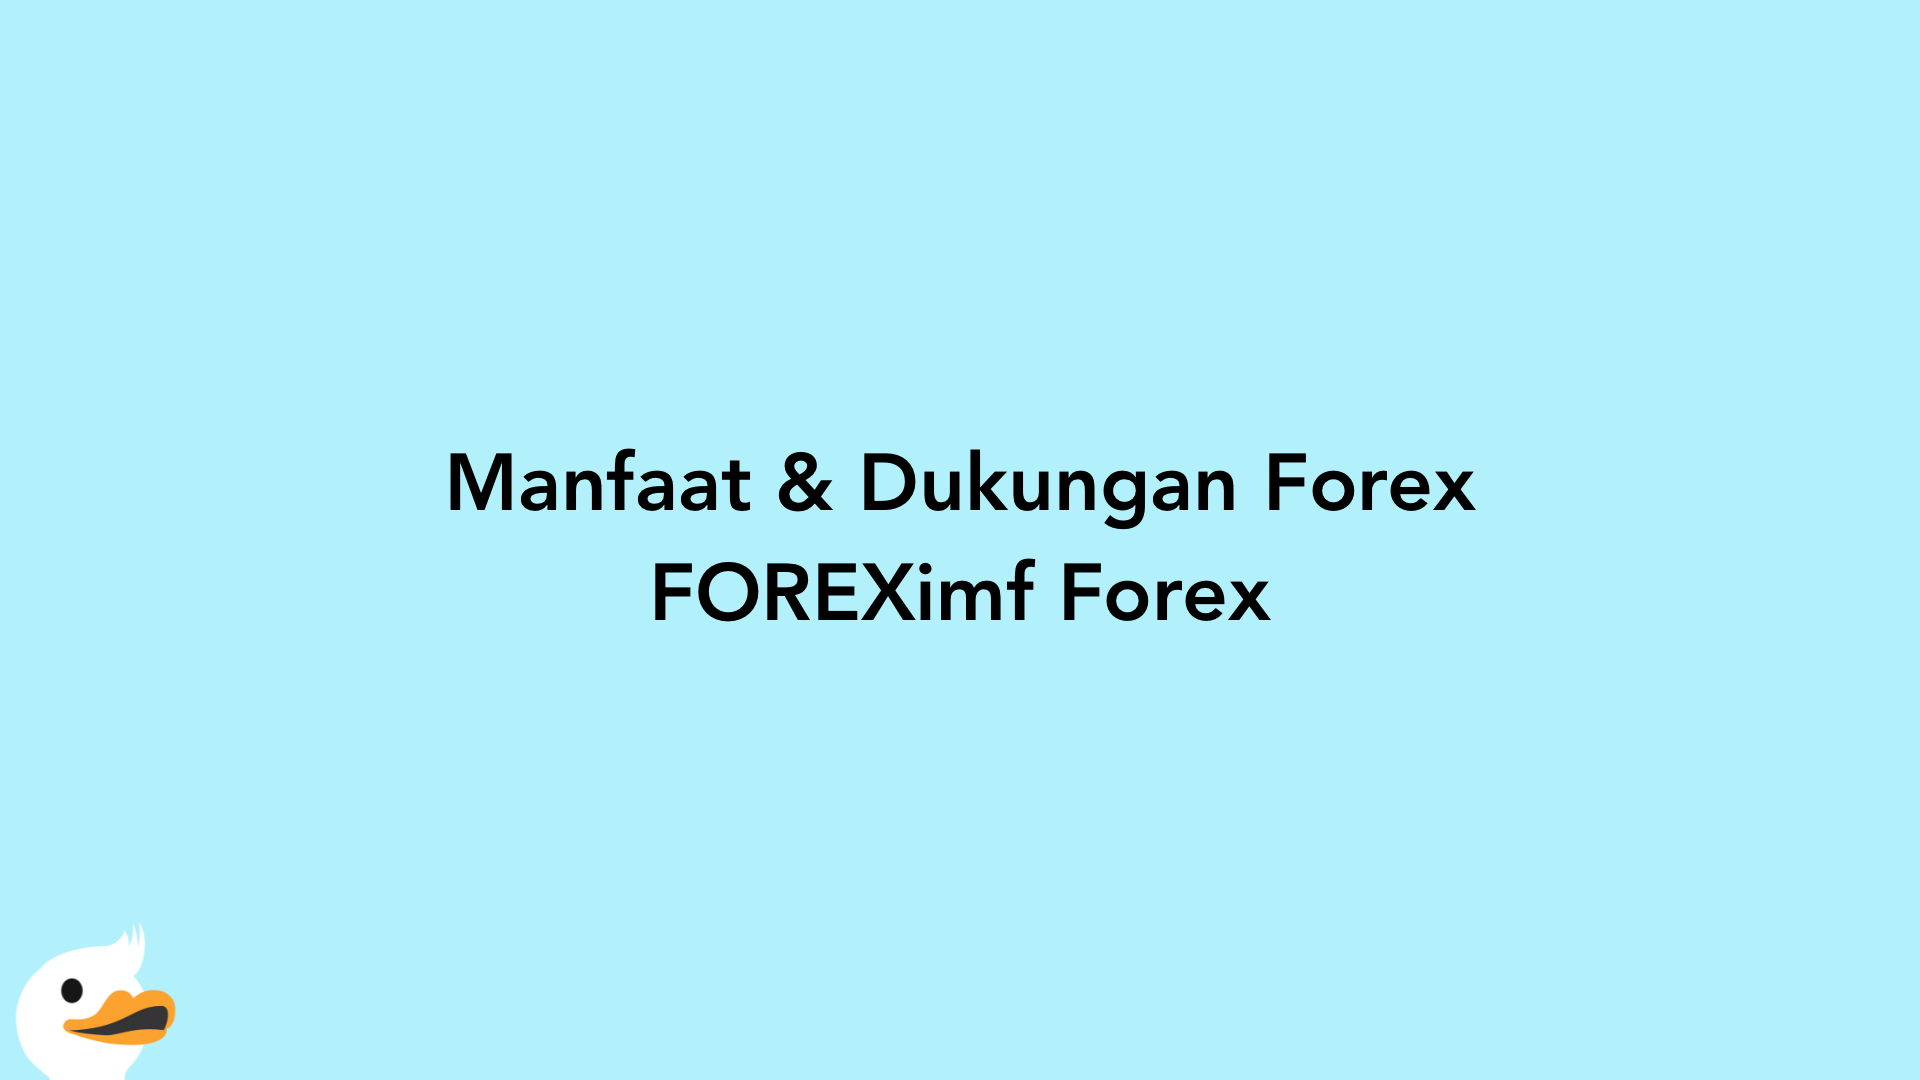 Manfaat & Dukungan Forex FOREXimf Forex